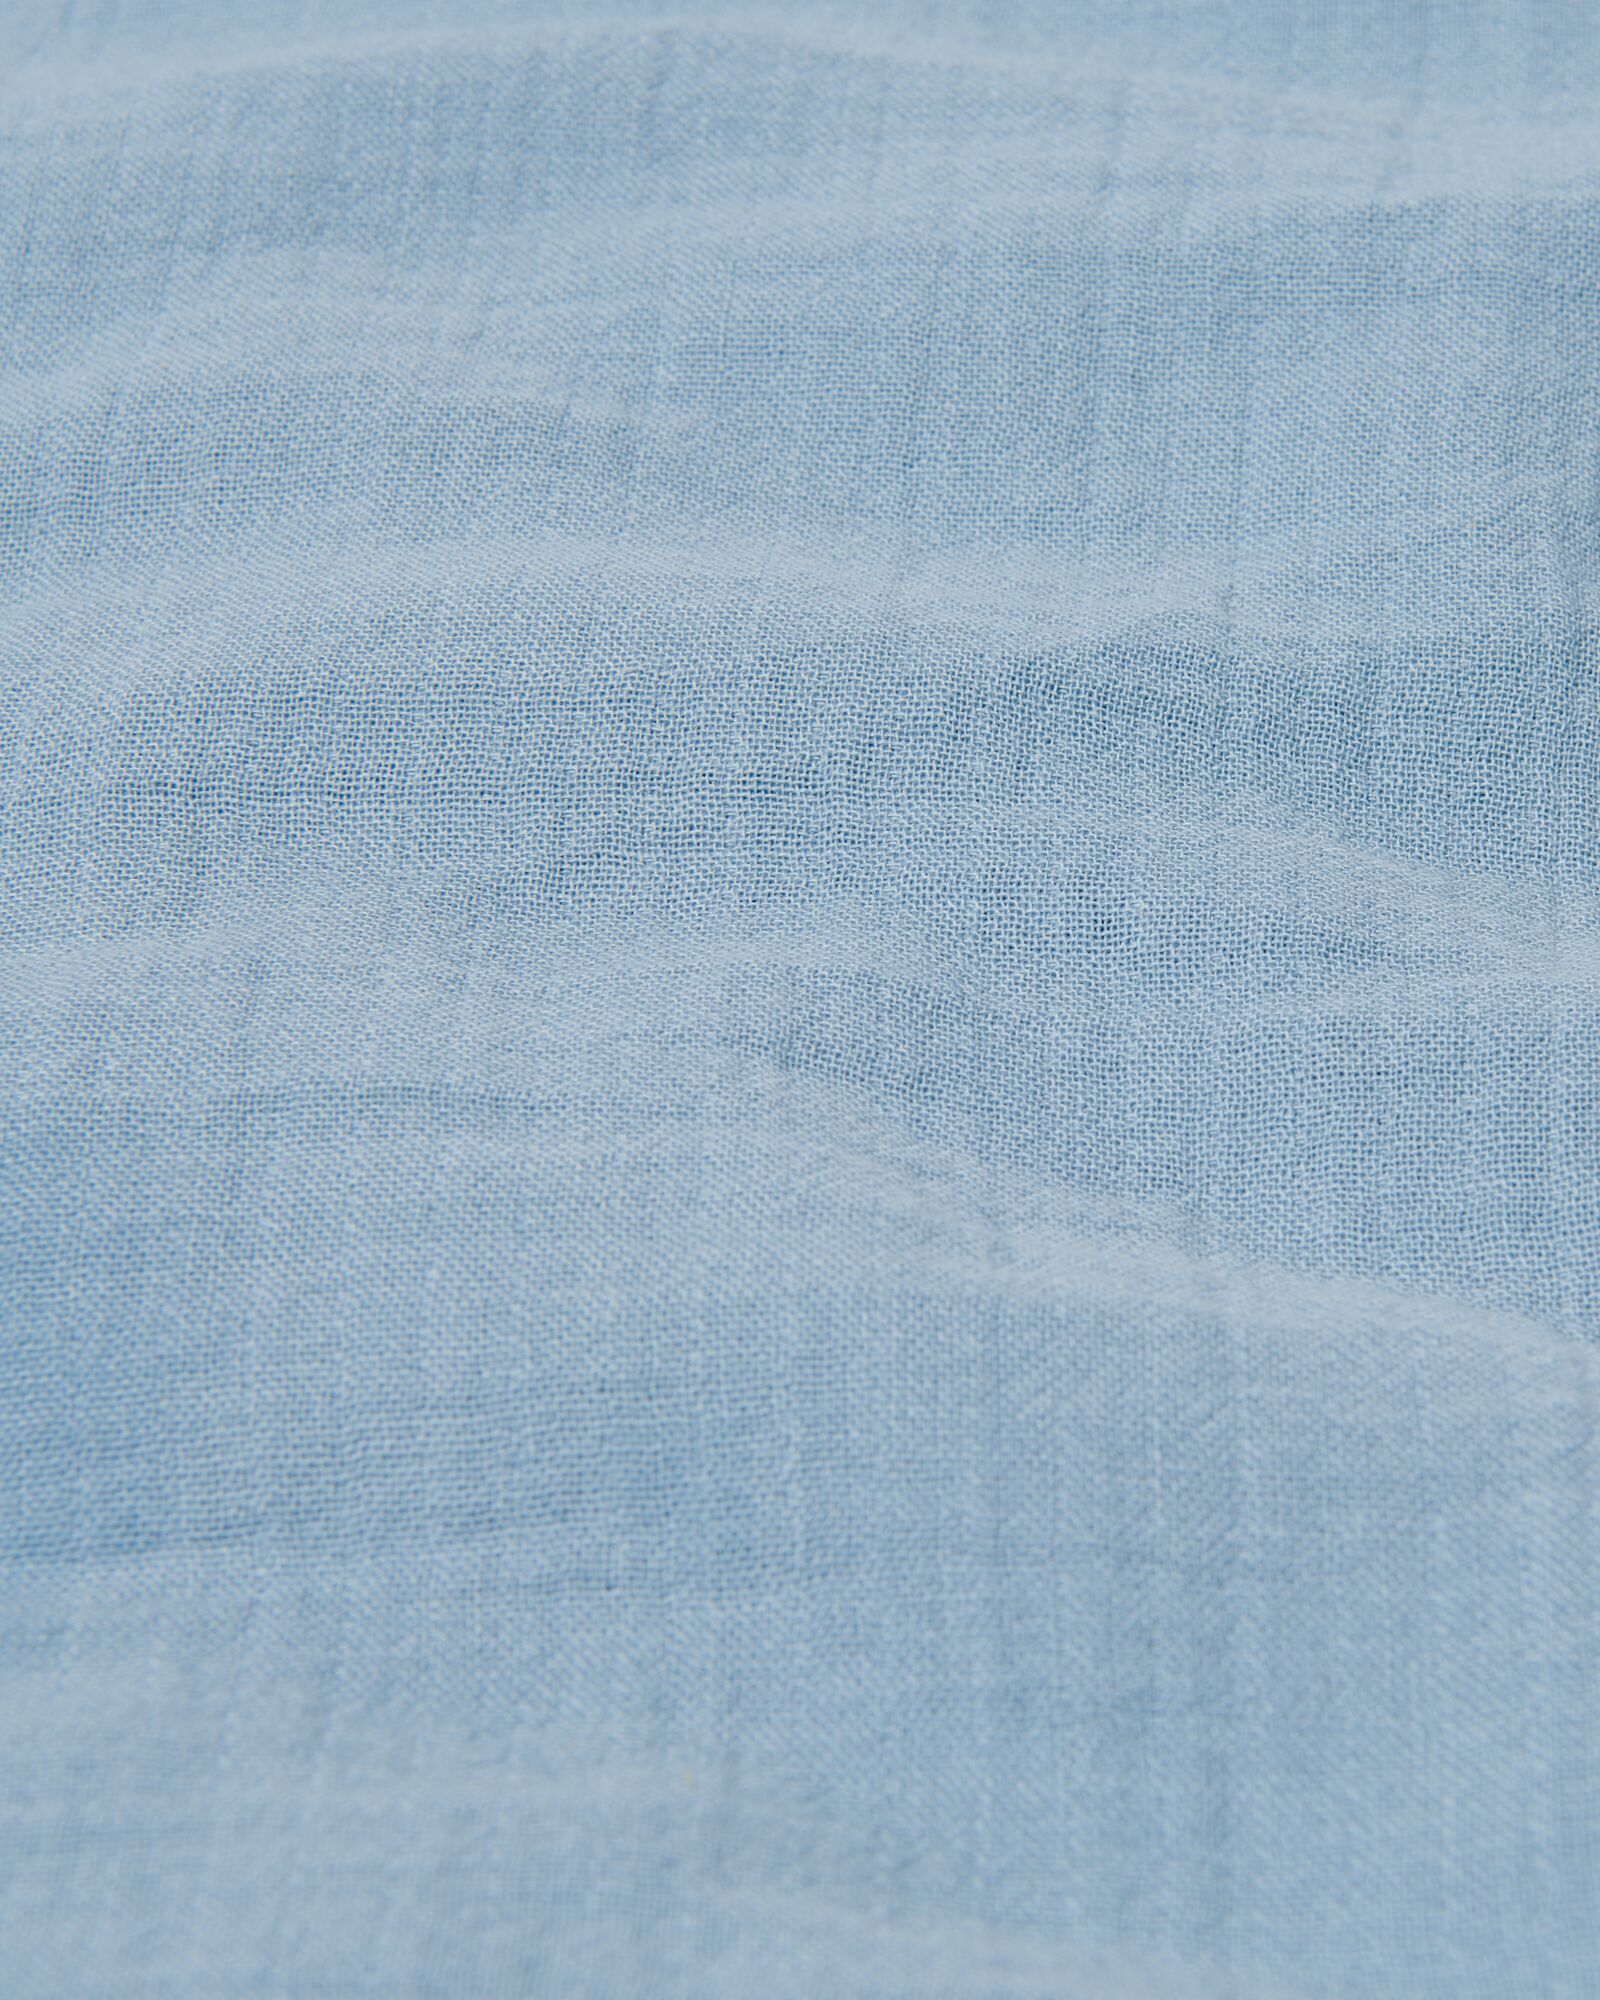 Bettwäsche, Baumwoll-Musselin, 140 x 200/220 cm, blau - 5730161 - HEMA